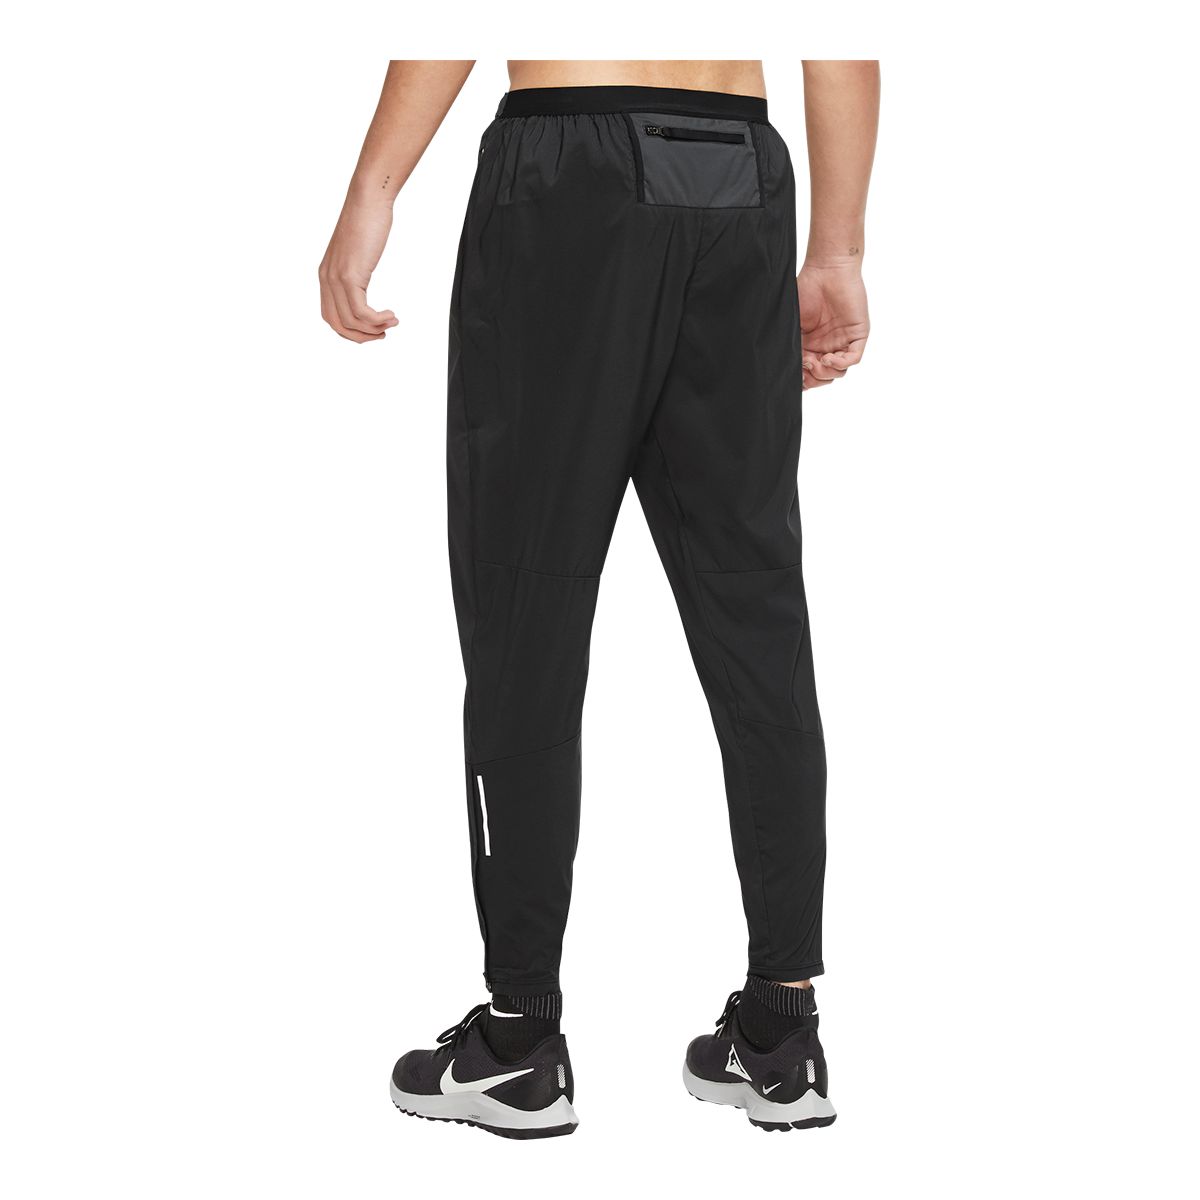  Nike Men's Phenom Elite Knit Running Pants, Grey